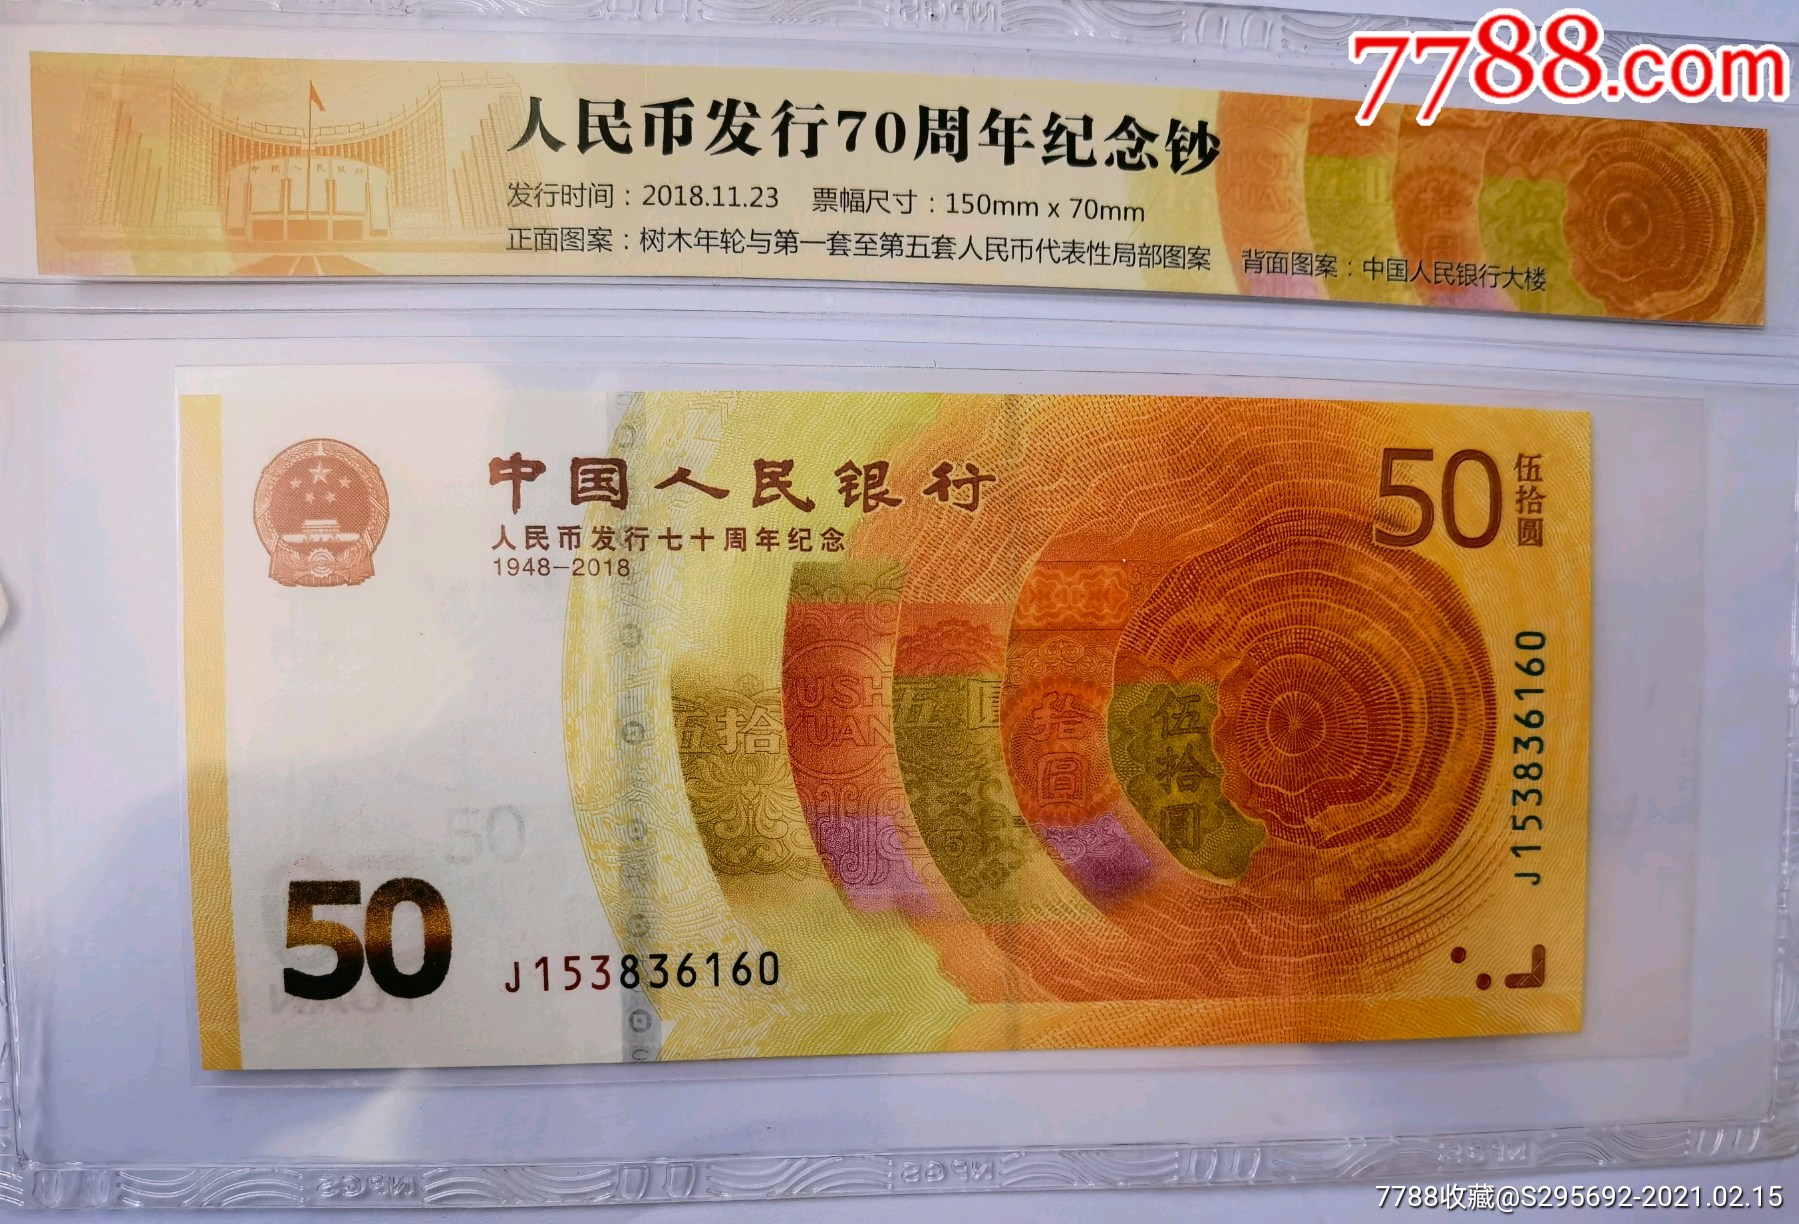 中国人民银行发行70周年纪念钞